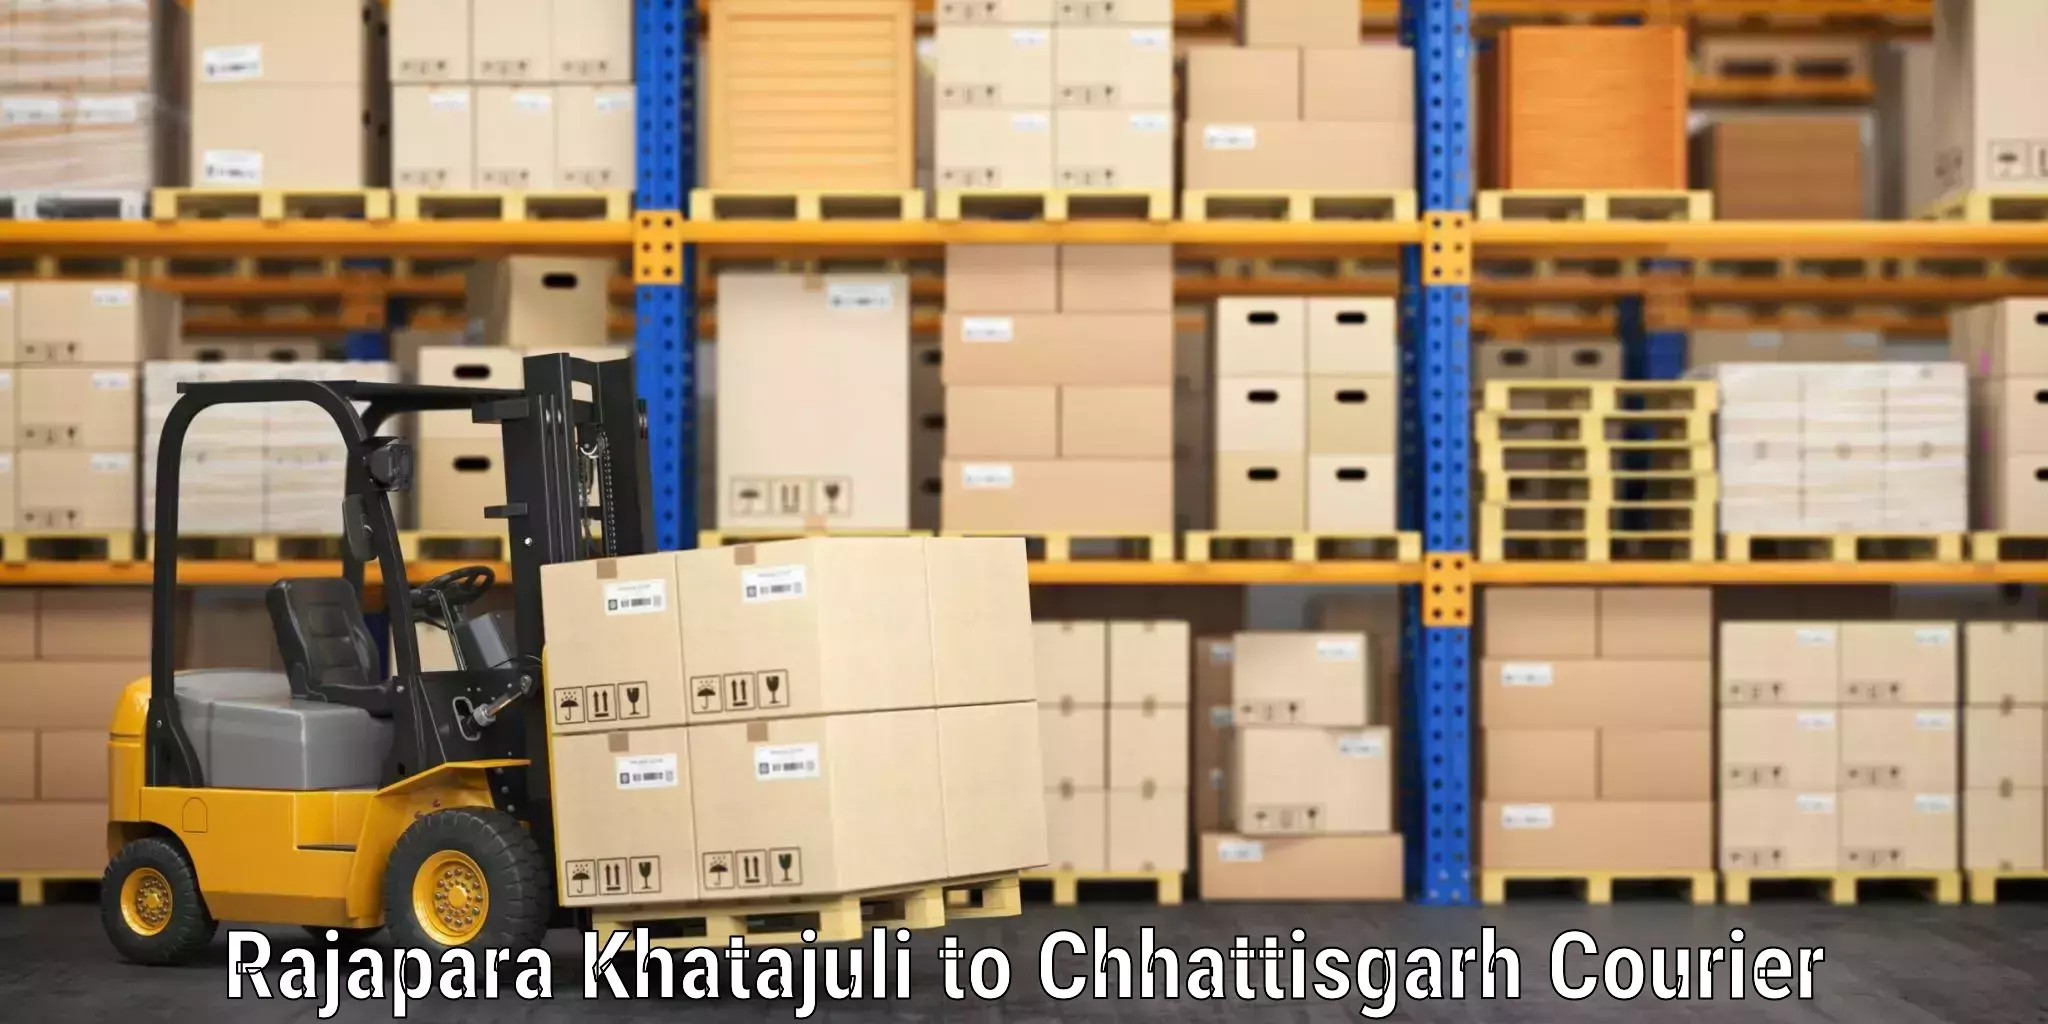 Baggage shipping logistics Rajapara Khatajuli to Kanker